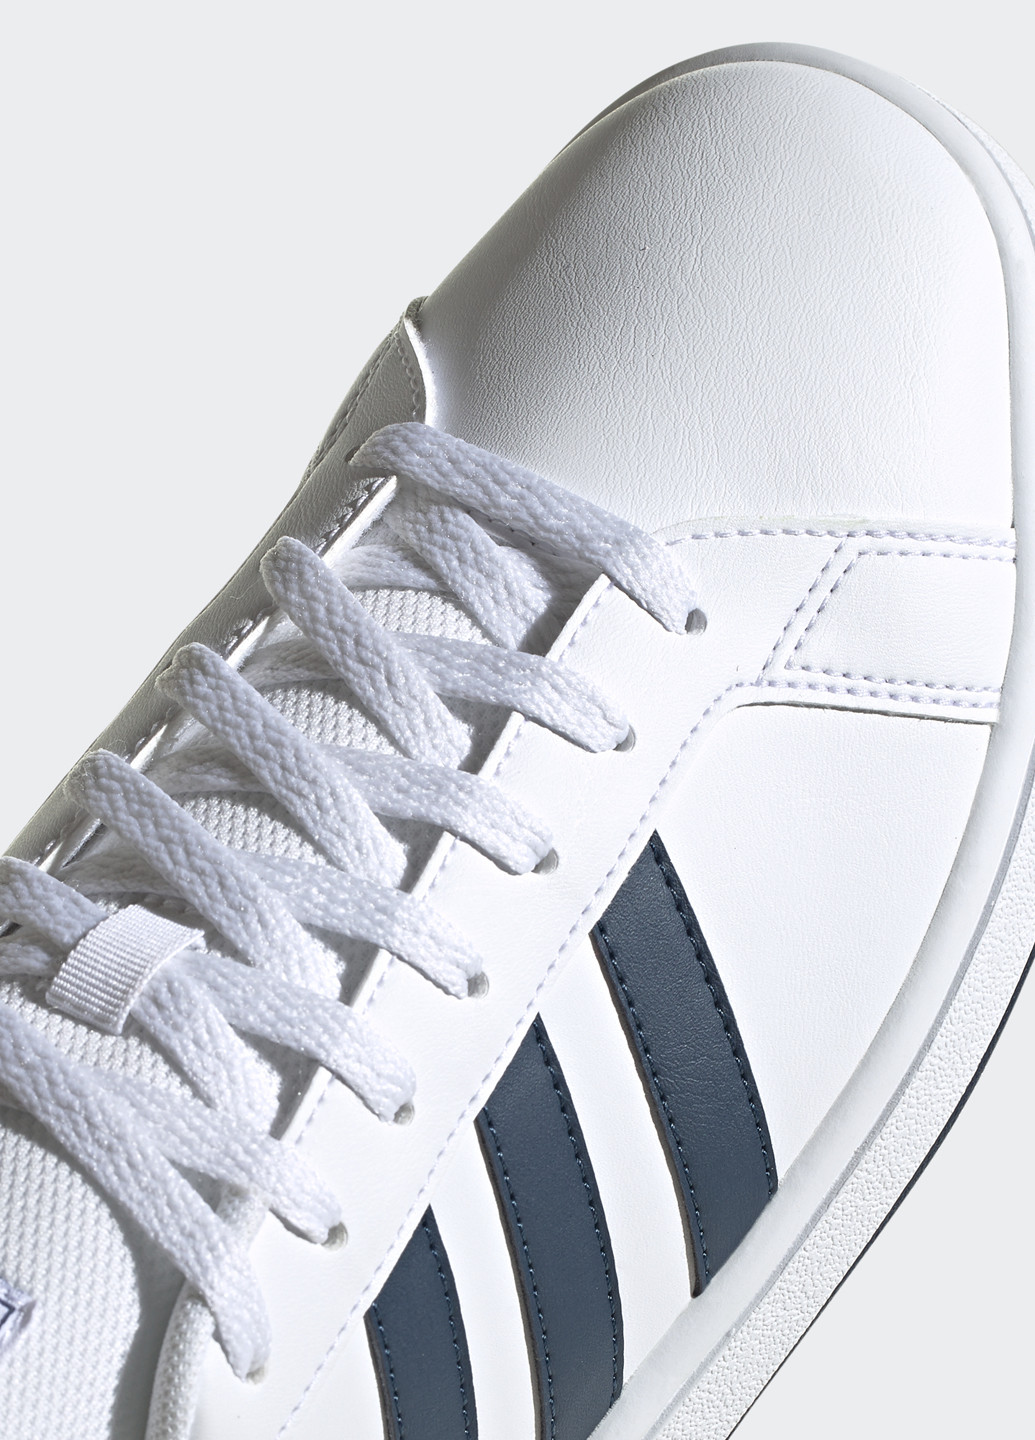 Белые кросівки adidas